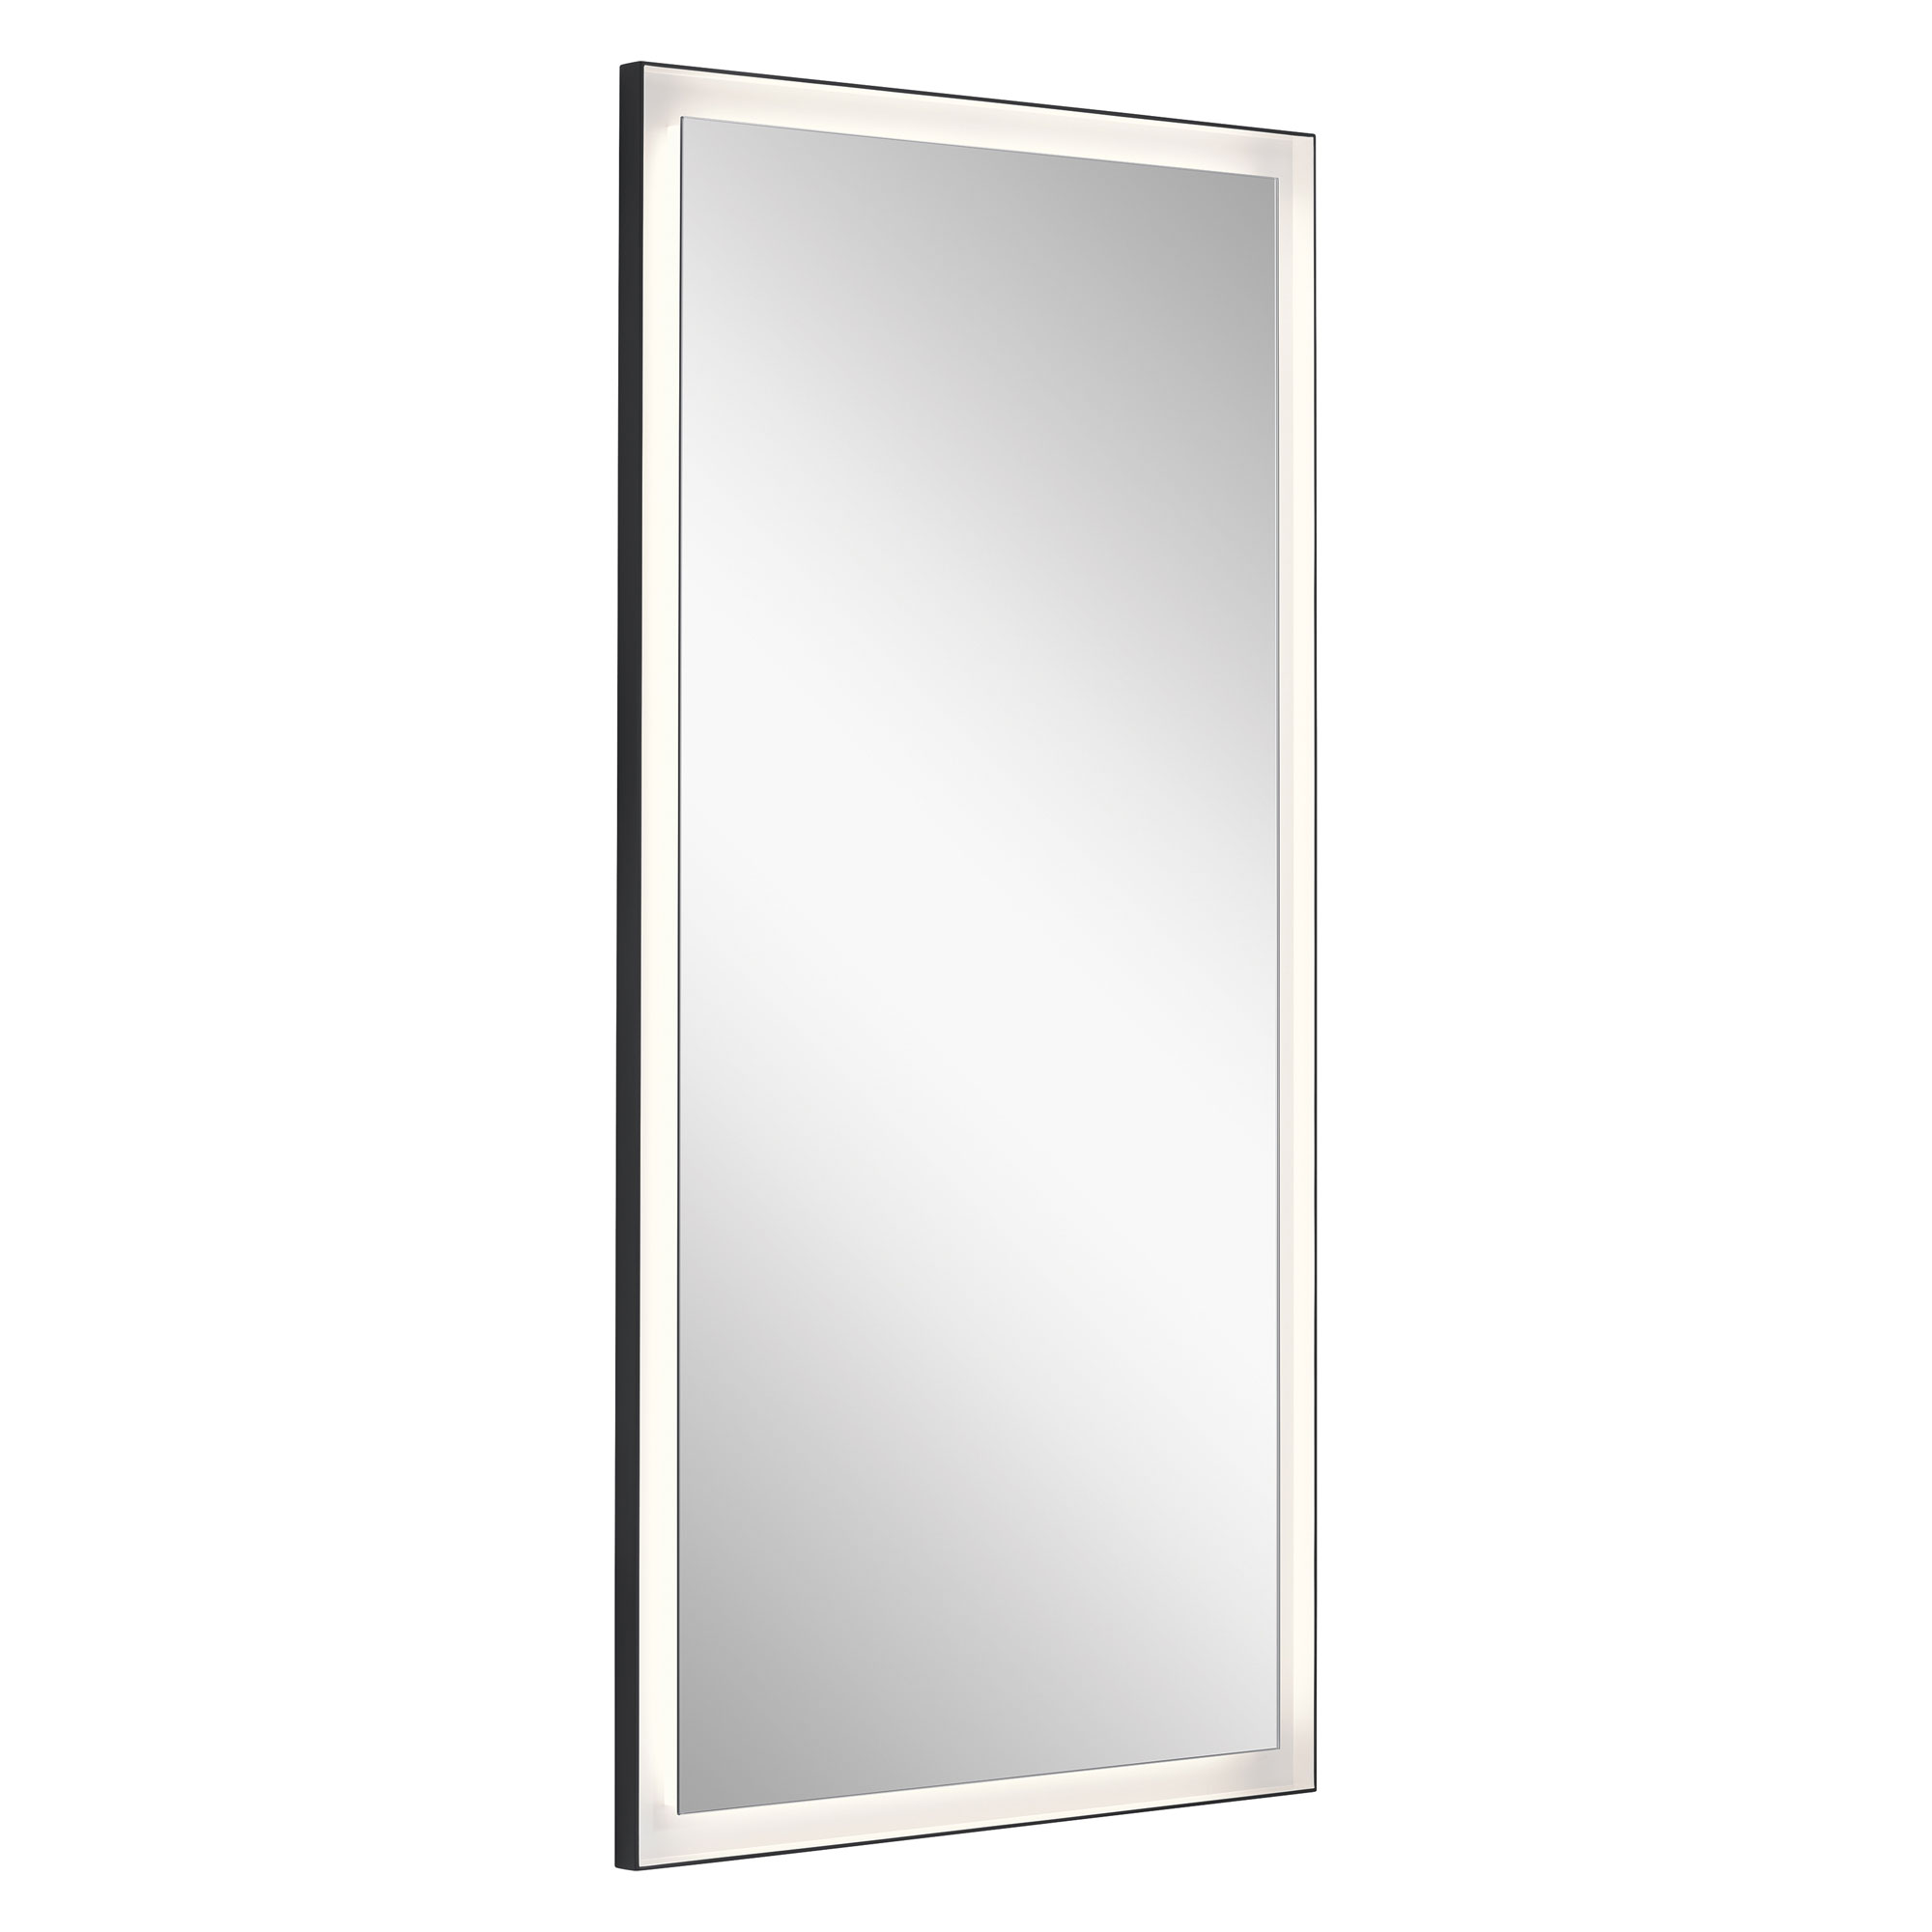 Ryame Lighted Wardrobe Mirror by Elan | ELA-84171 | ELN805345